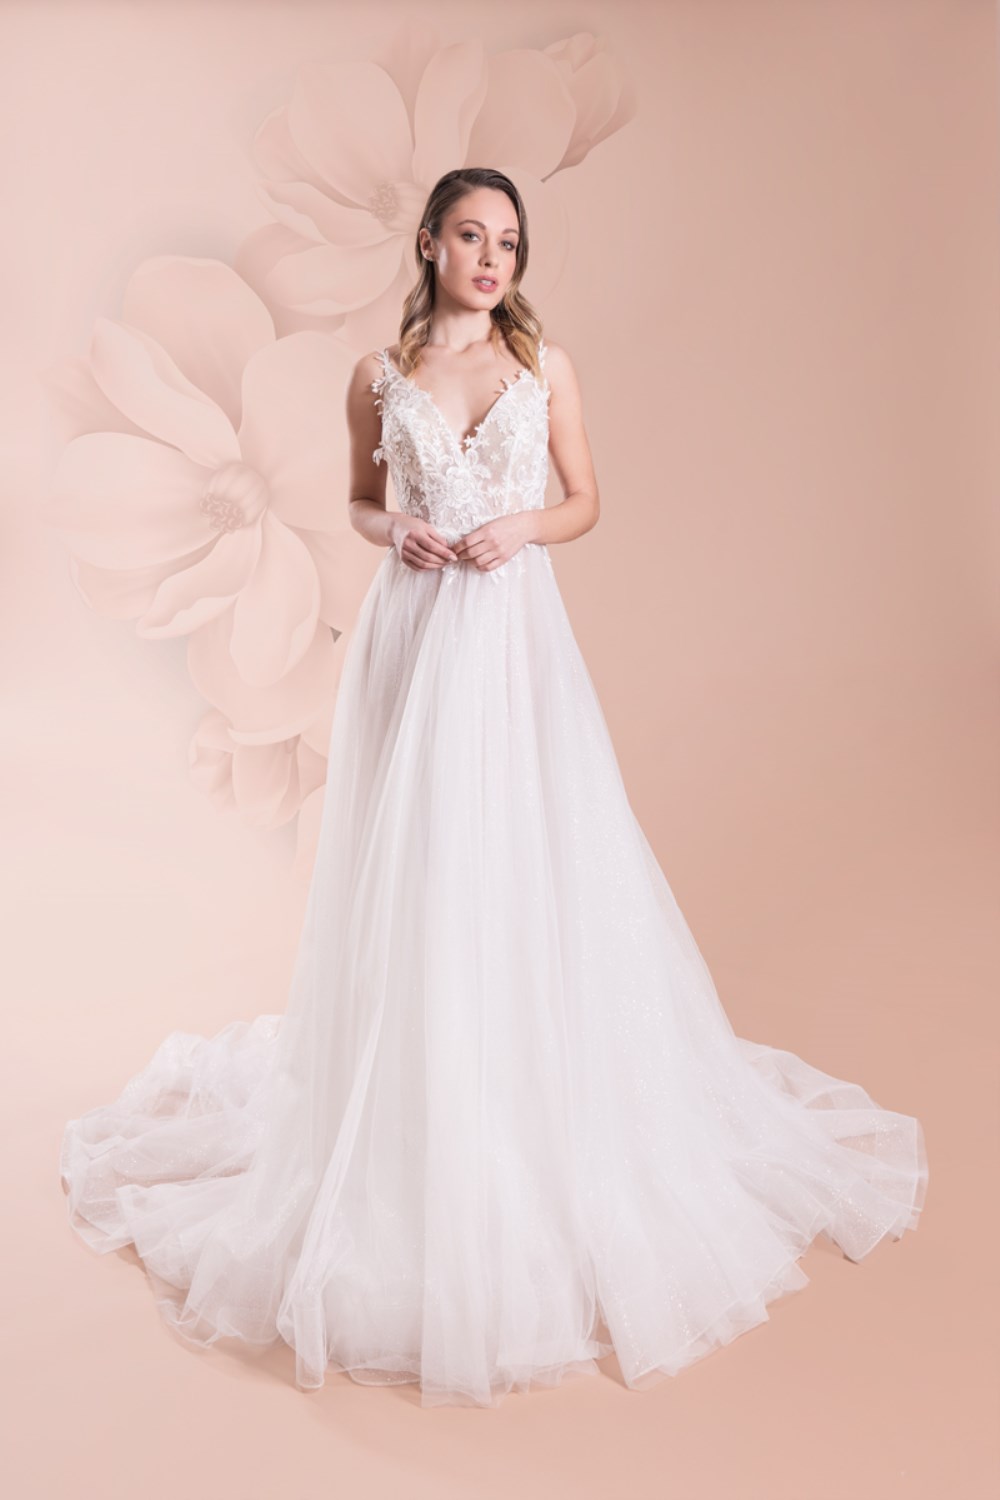 Wedding dresses Collezione - Claudia : C 504 - C 504 